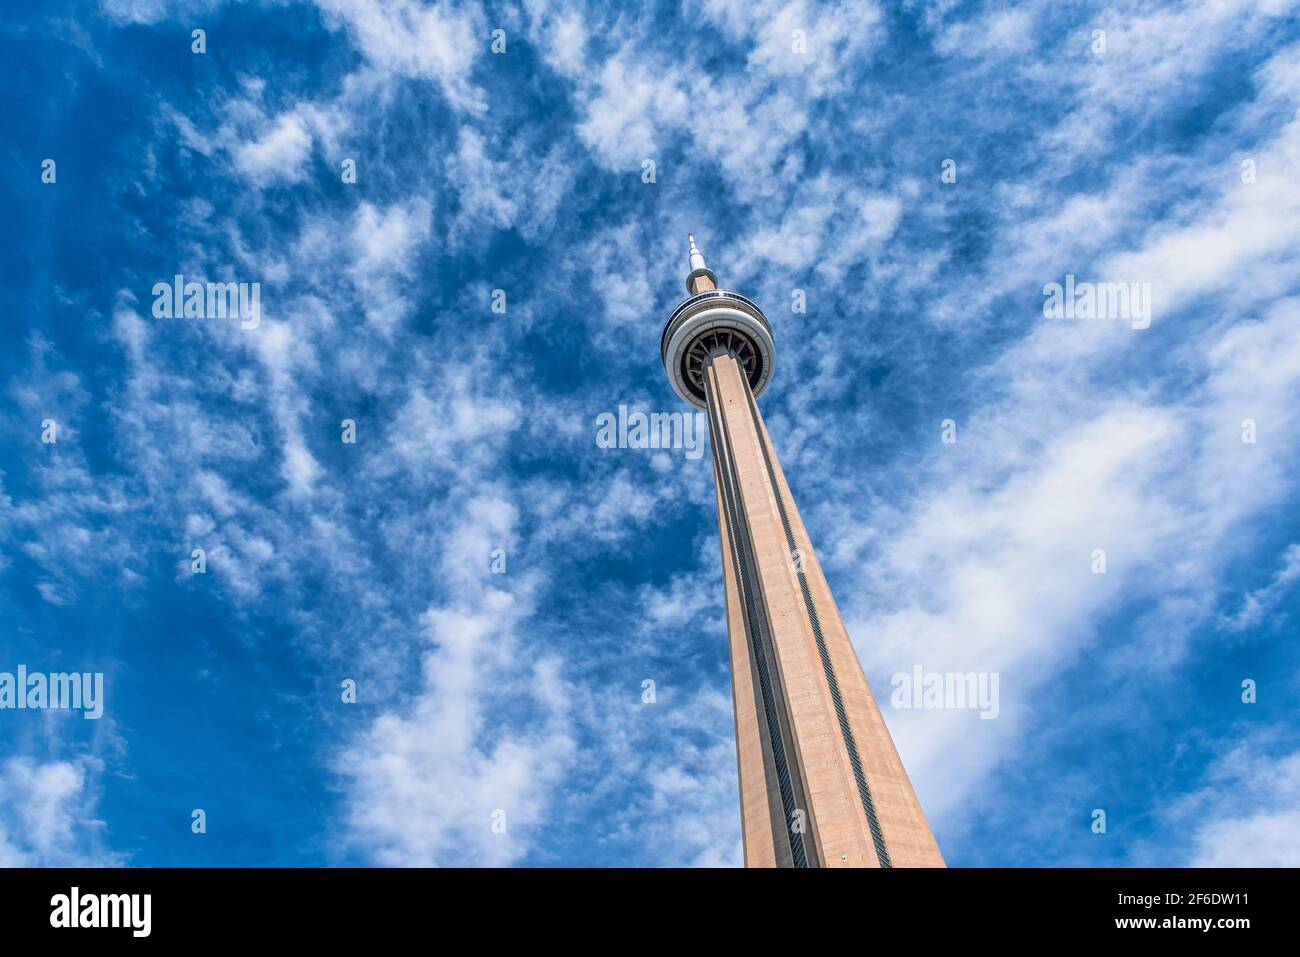 La Torre CN, un símbolo canadiense y un punto de referencia internacional, se ve desde un punto de vista inusual Foto de stock